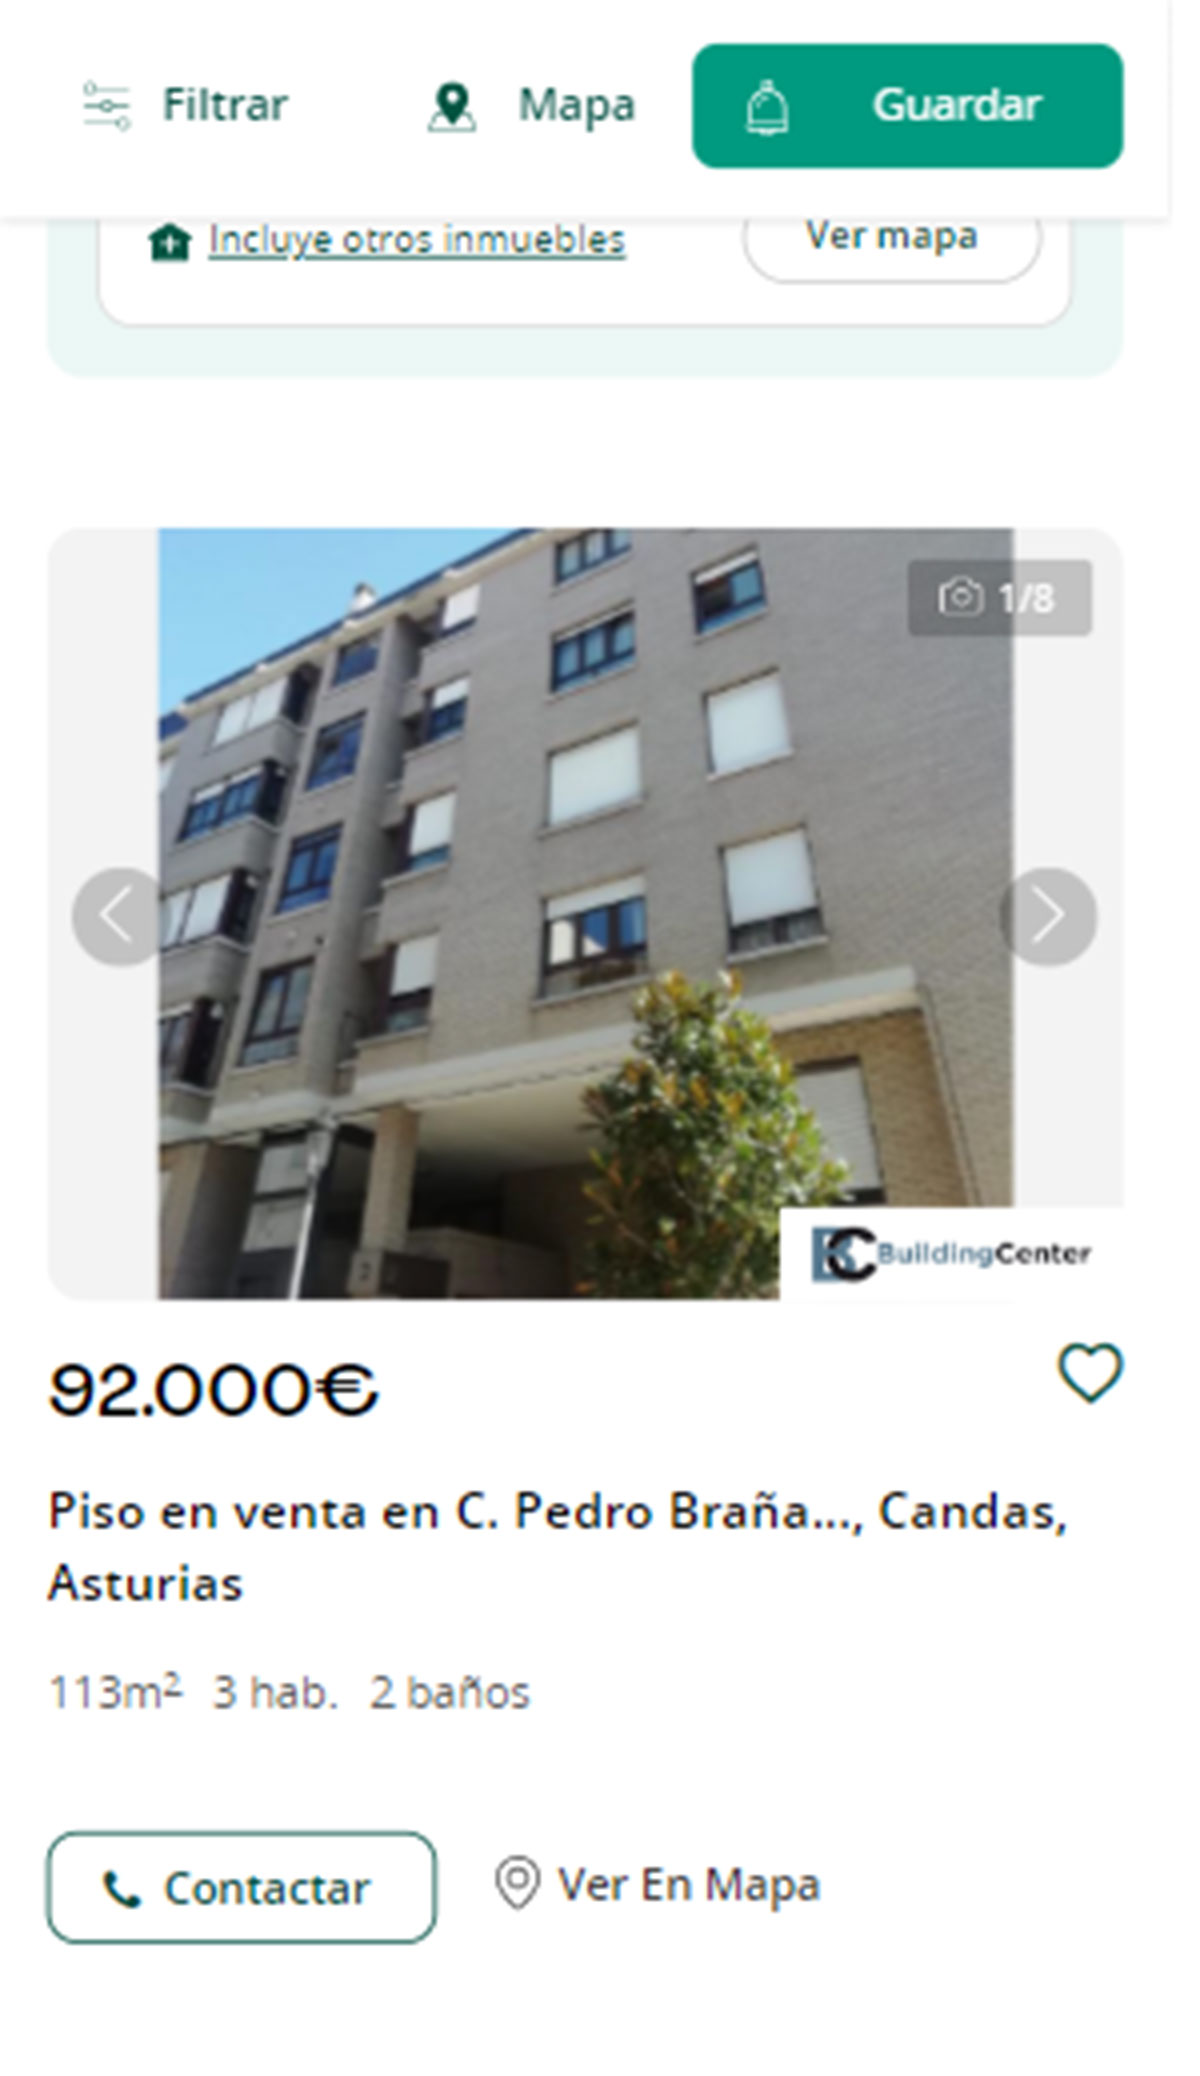 Piso en Asturias por 92.000 euros